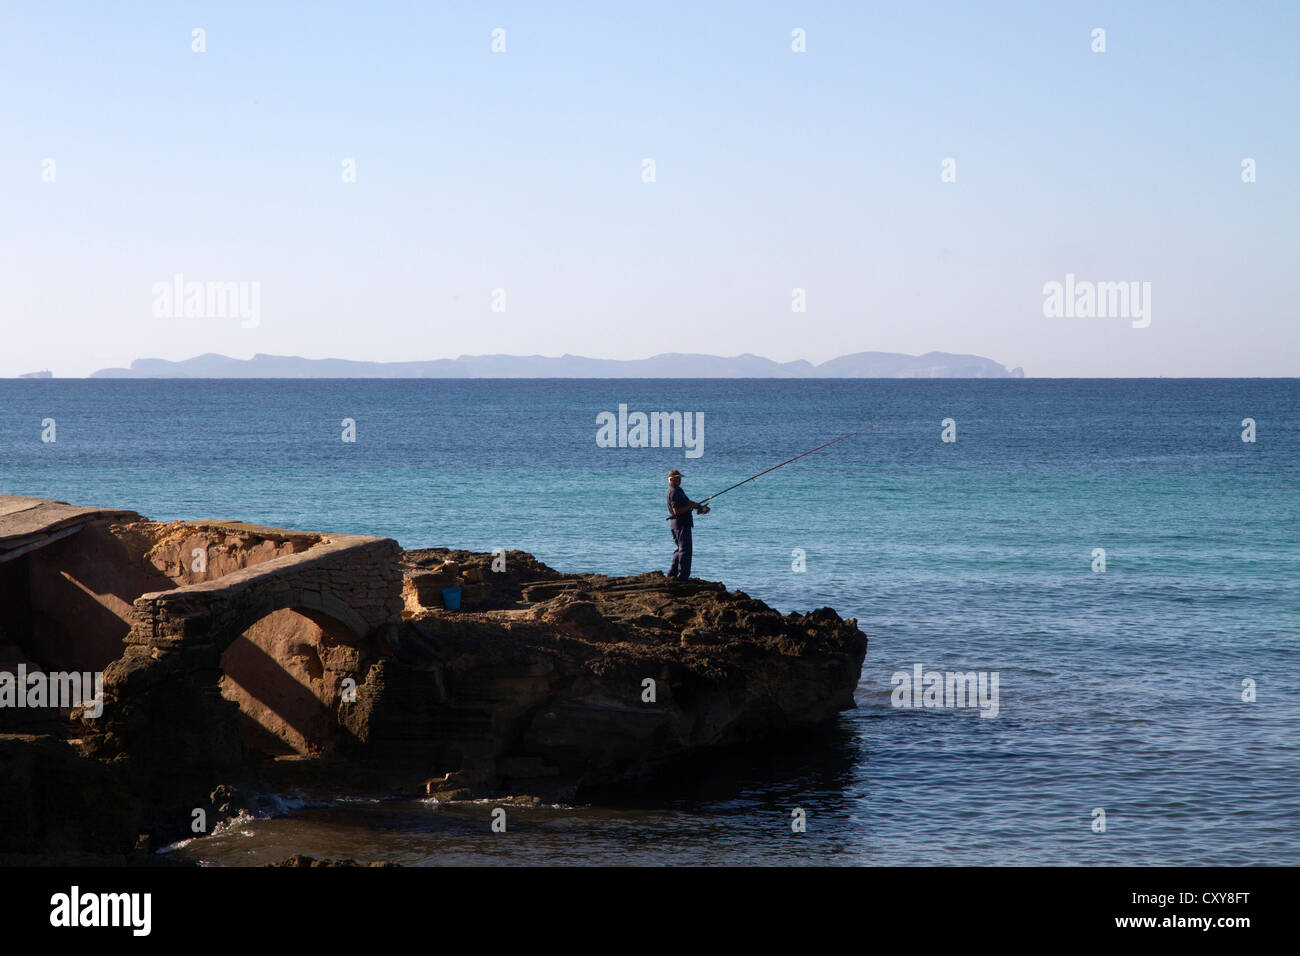 L'homme pêche en mer Méditerranée par l'eau de roche, l'île de Cabrera sur fond d'horizon, Majorque Îles Baléares Espagne Banque D'Images